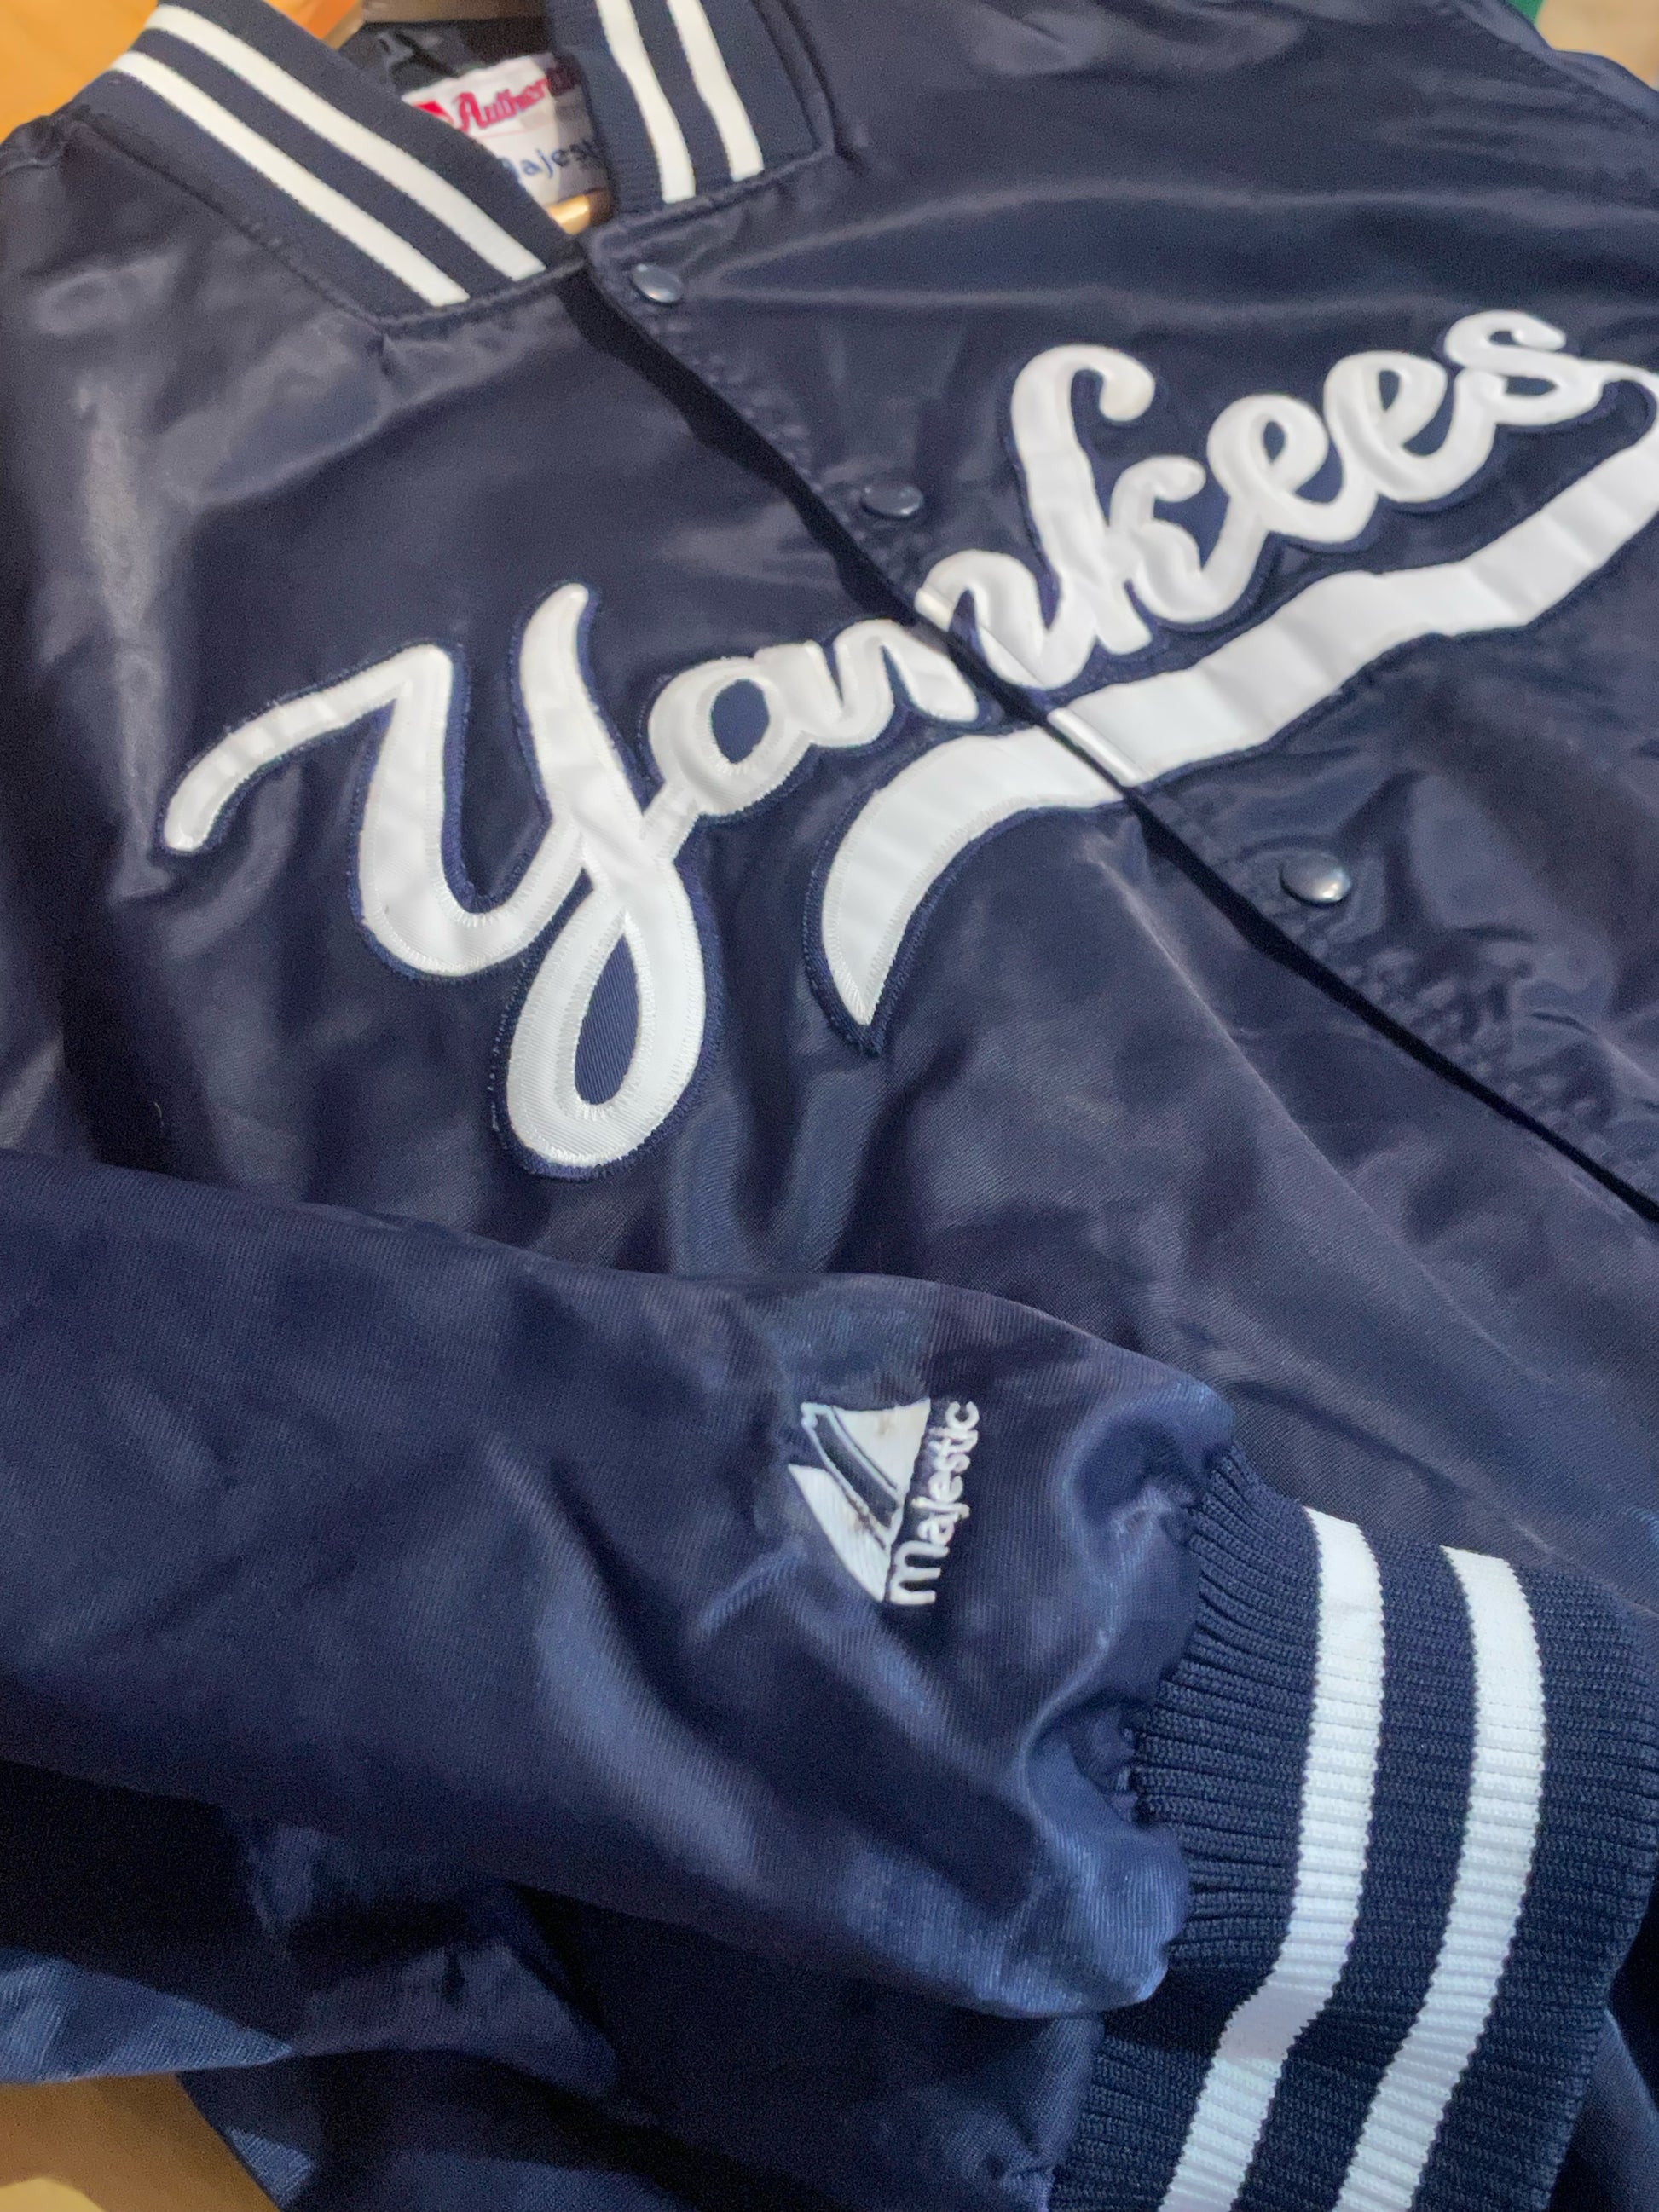 Majestic Glascoe NY Yankees Jacket - HotelShops